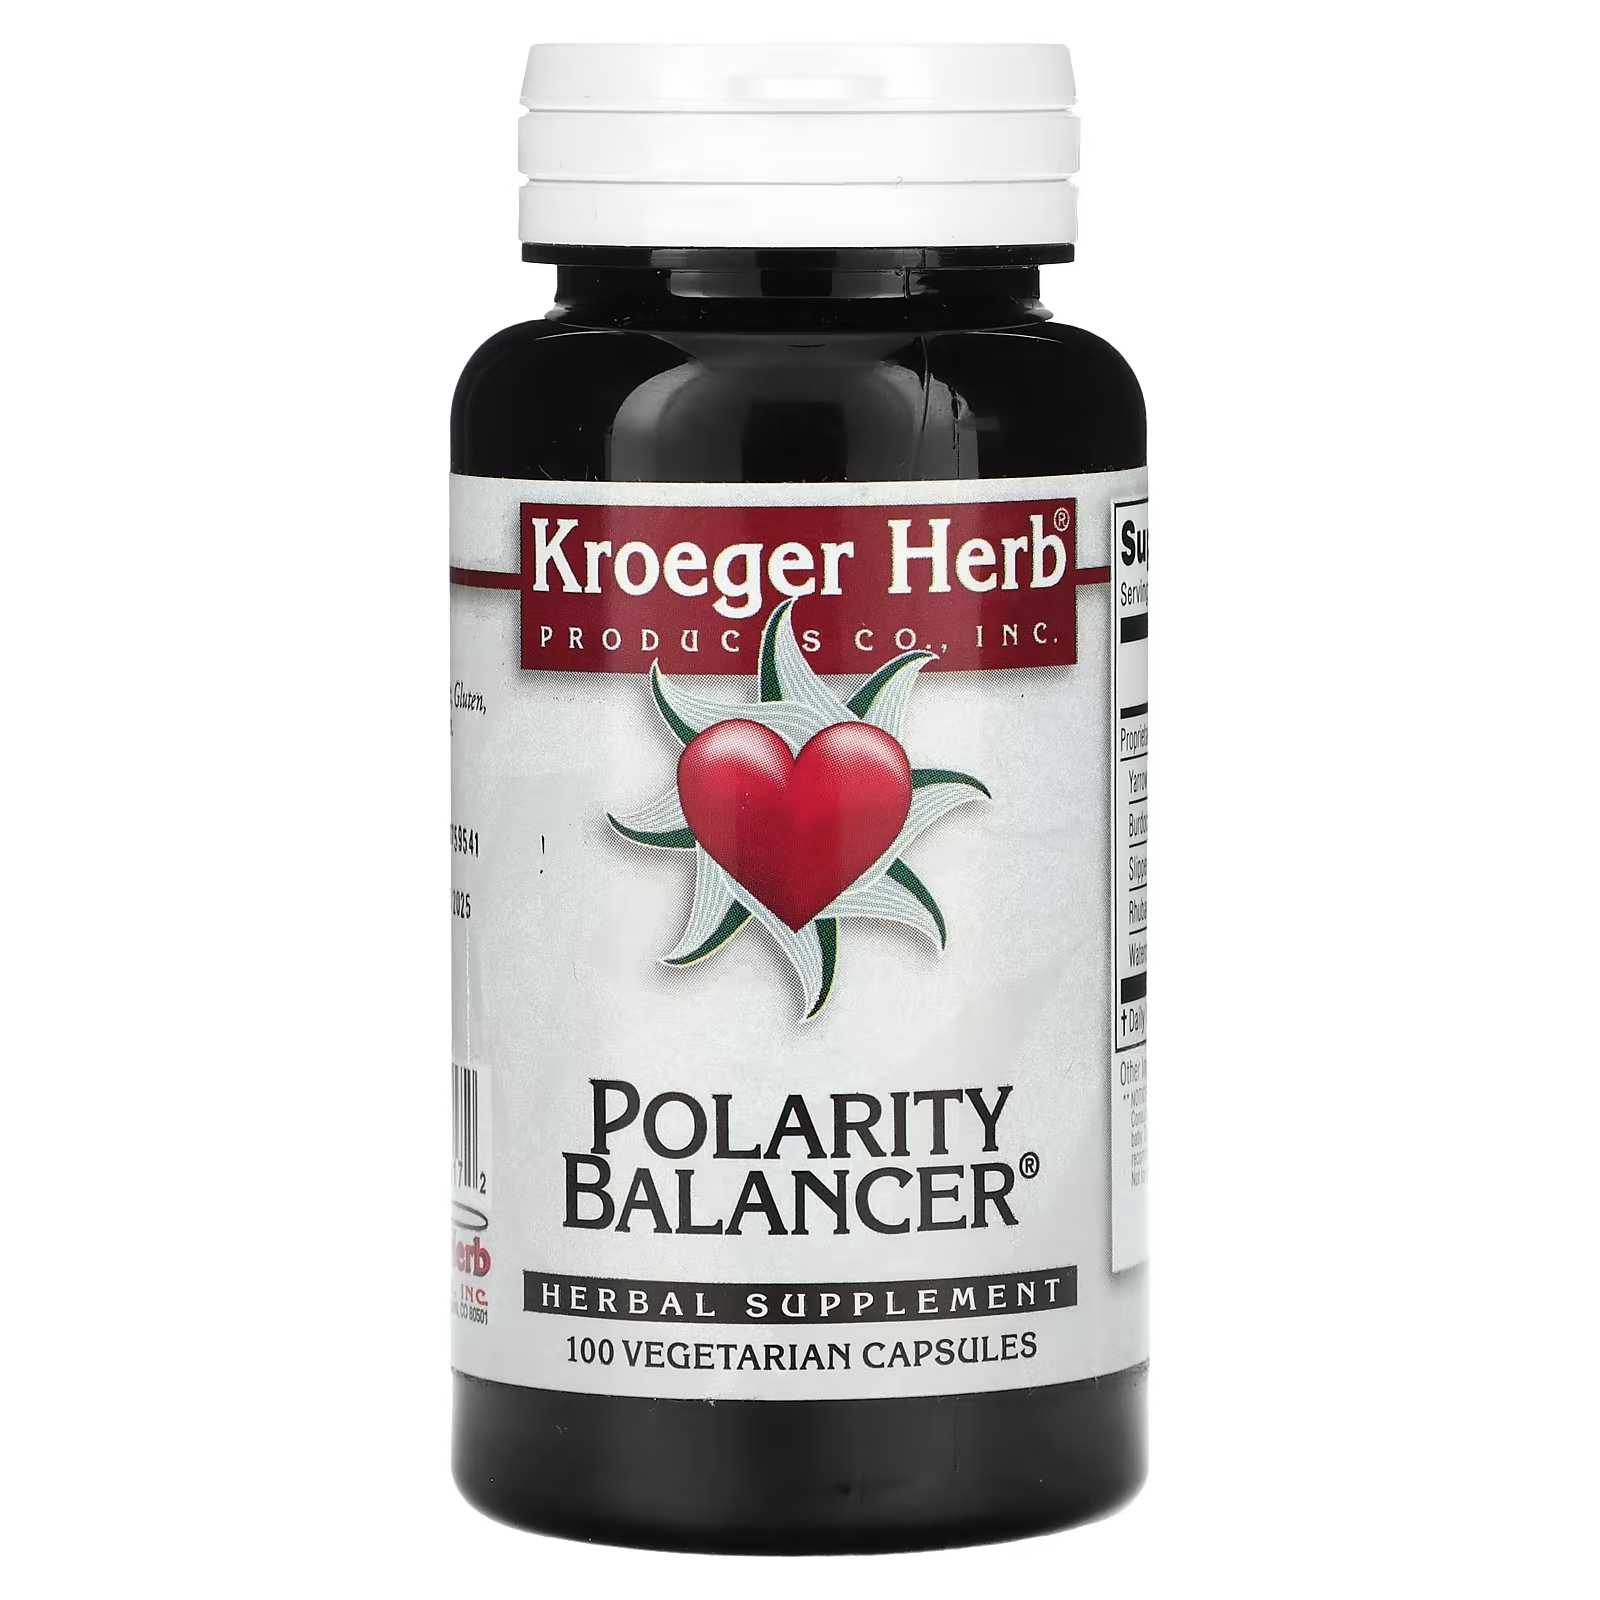 Растительная добавка Kroeger Herb Co балансировщик полярности, 100 капсул растительная добавка kroeger herb co lung formula 100 вегетарианских капсул